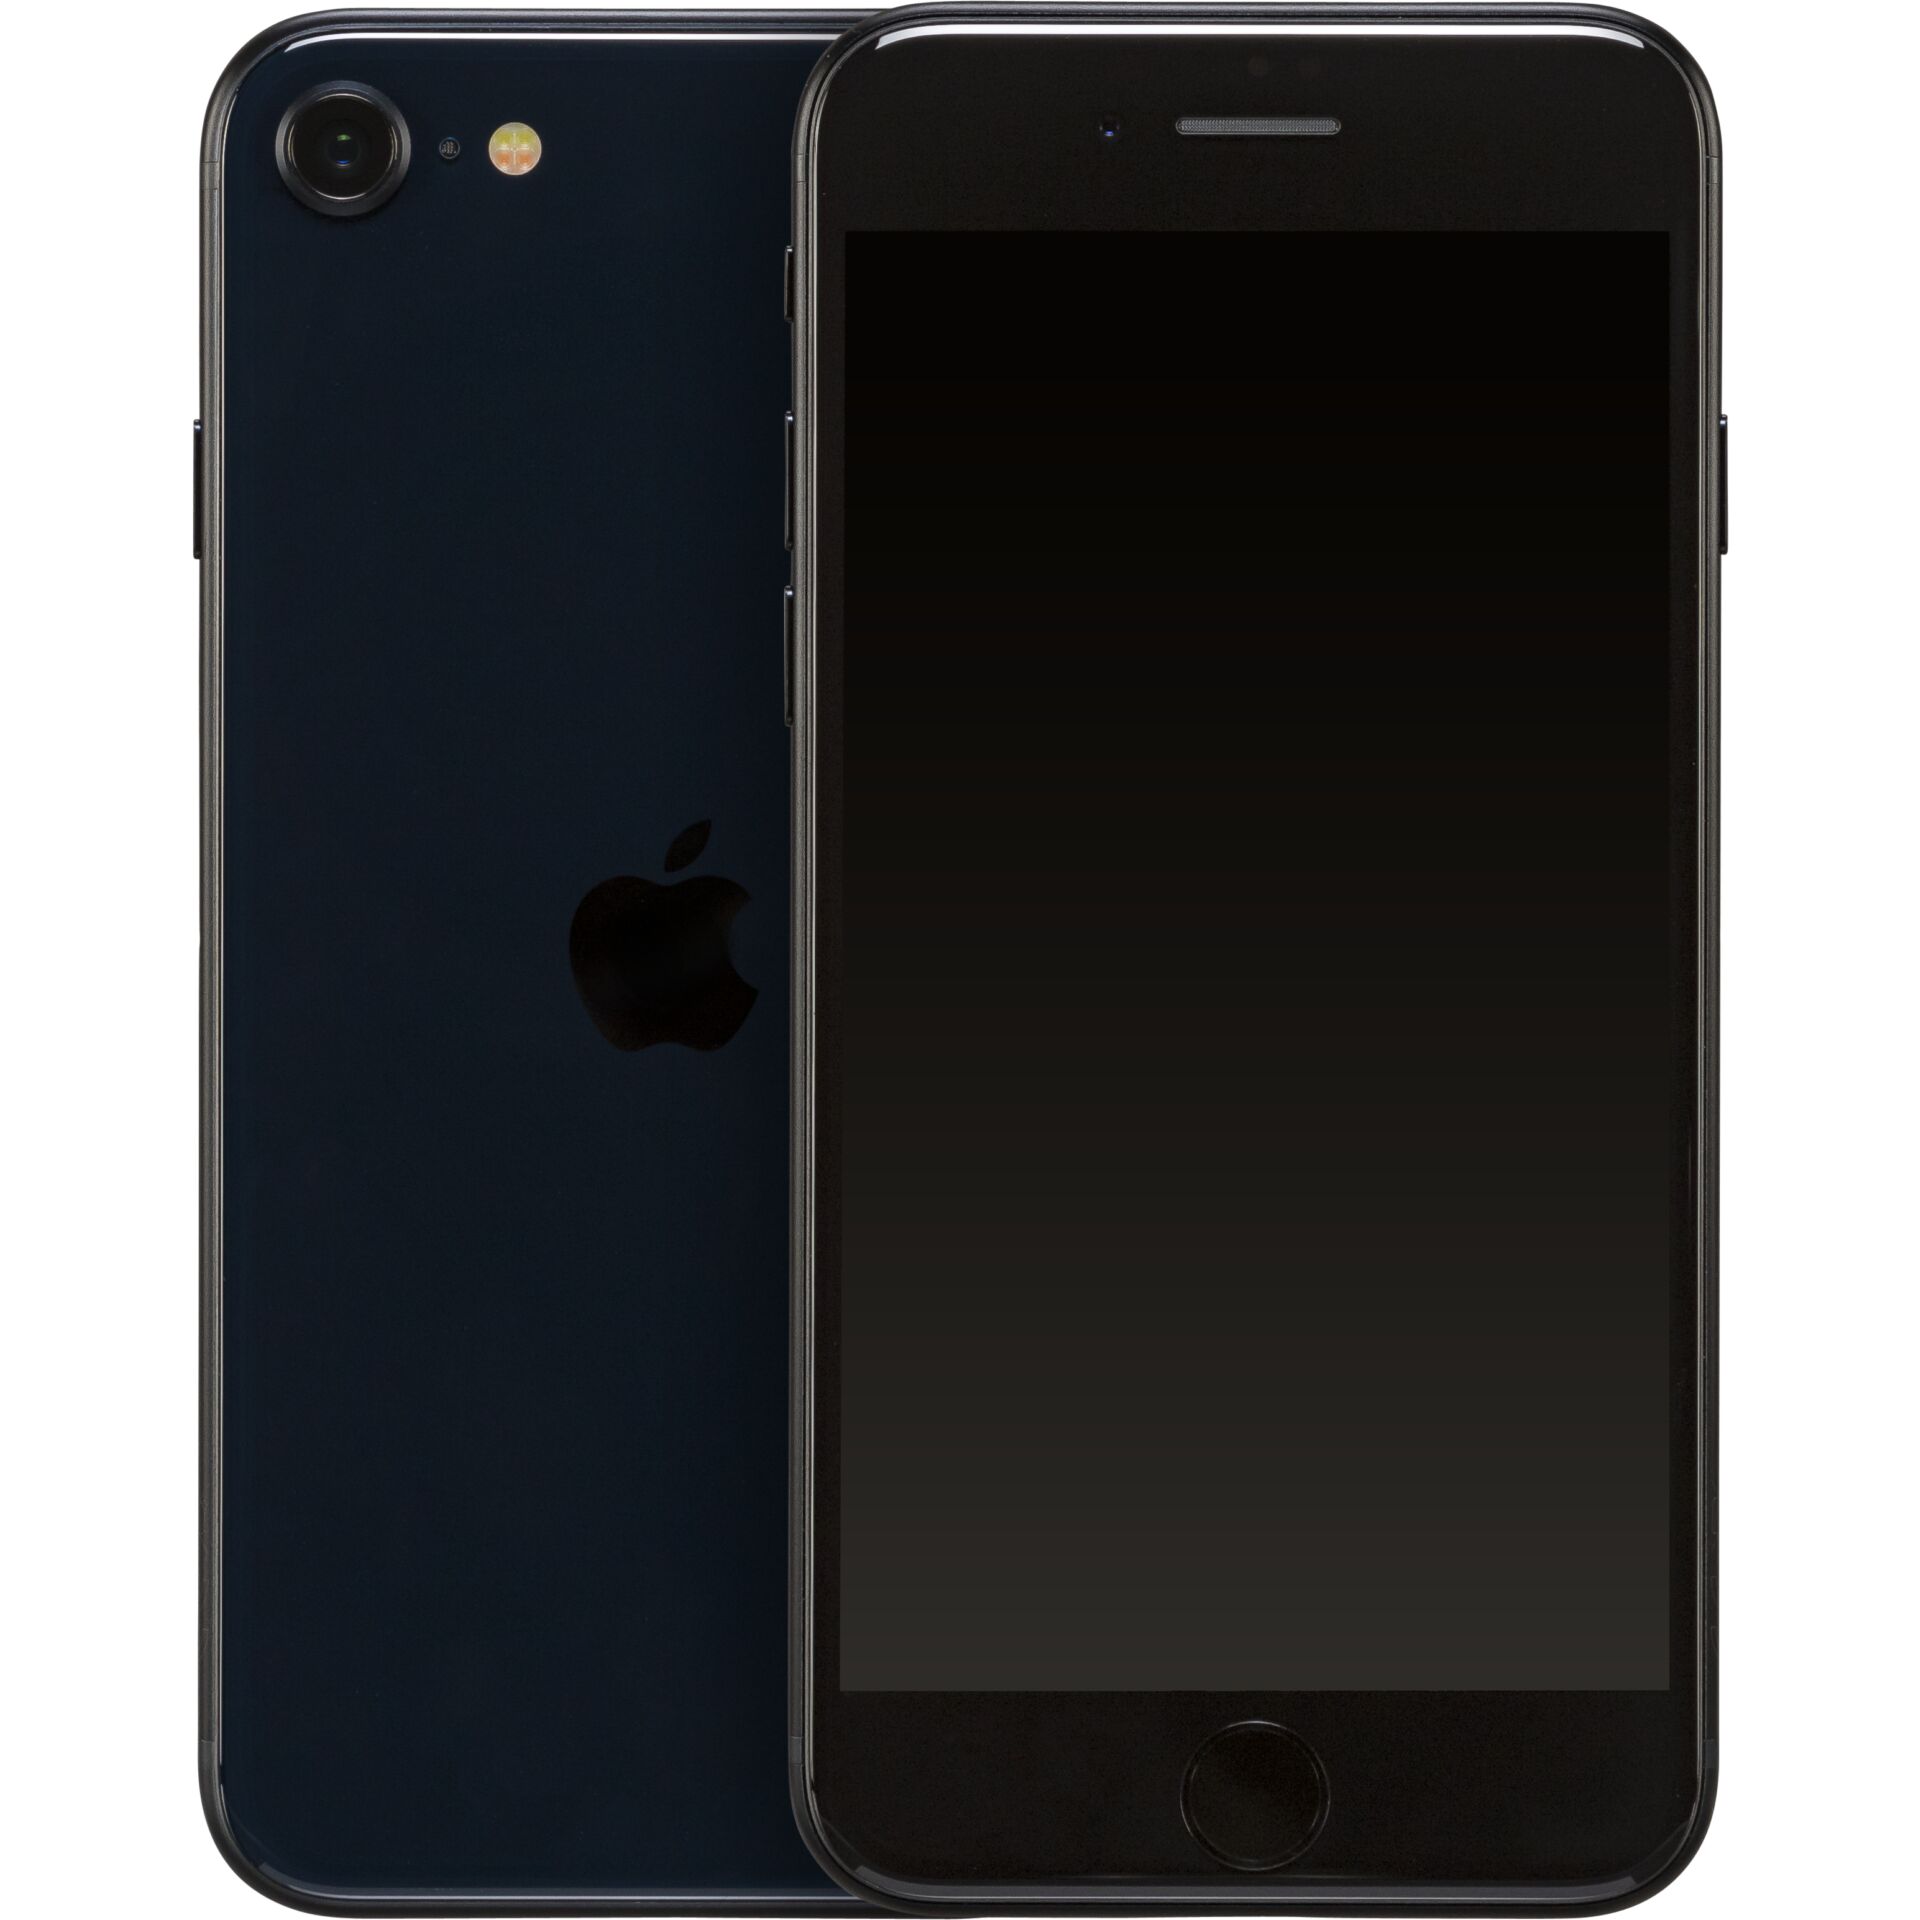 Apple iPhone SE 11,9 cm (4.7) Dual-SIM iOS 15 5G 128 GB Schwarz